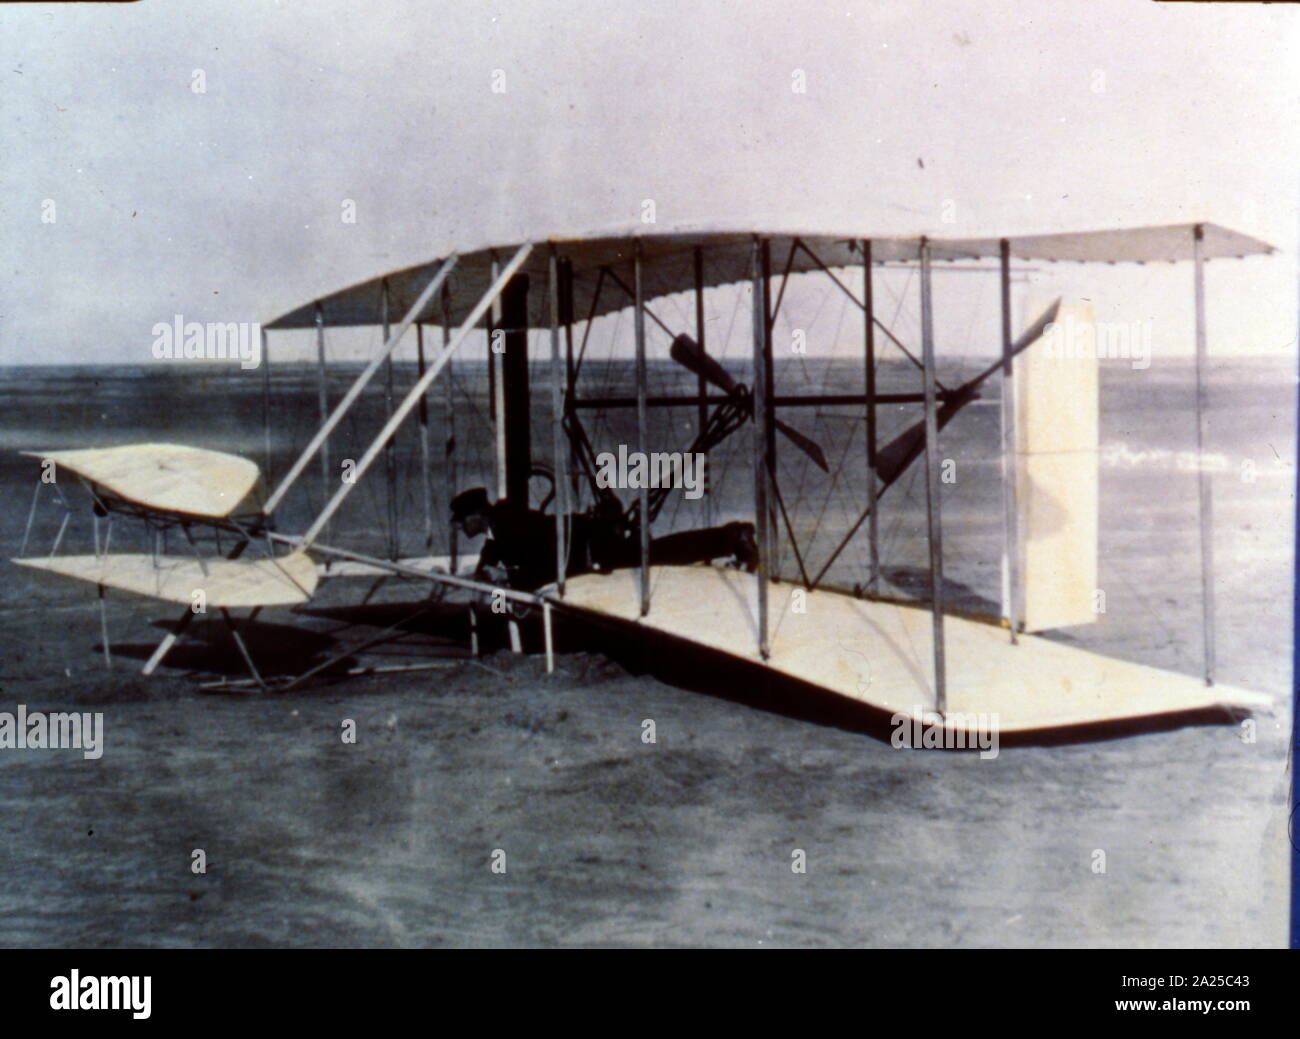 Le Wright Flyer est la première appareil plus lourd que l'air d'aéronefs motorisés. Il a été conçu et construit par les frères Wright. Ils ont volé quatre fois le 17 décembre 1903, près de Kill Devil Hills, à environ quatre miles (6,4 km) au sud de Kitty Hawk, Caroline du Nord. Banque D'Images